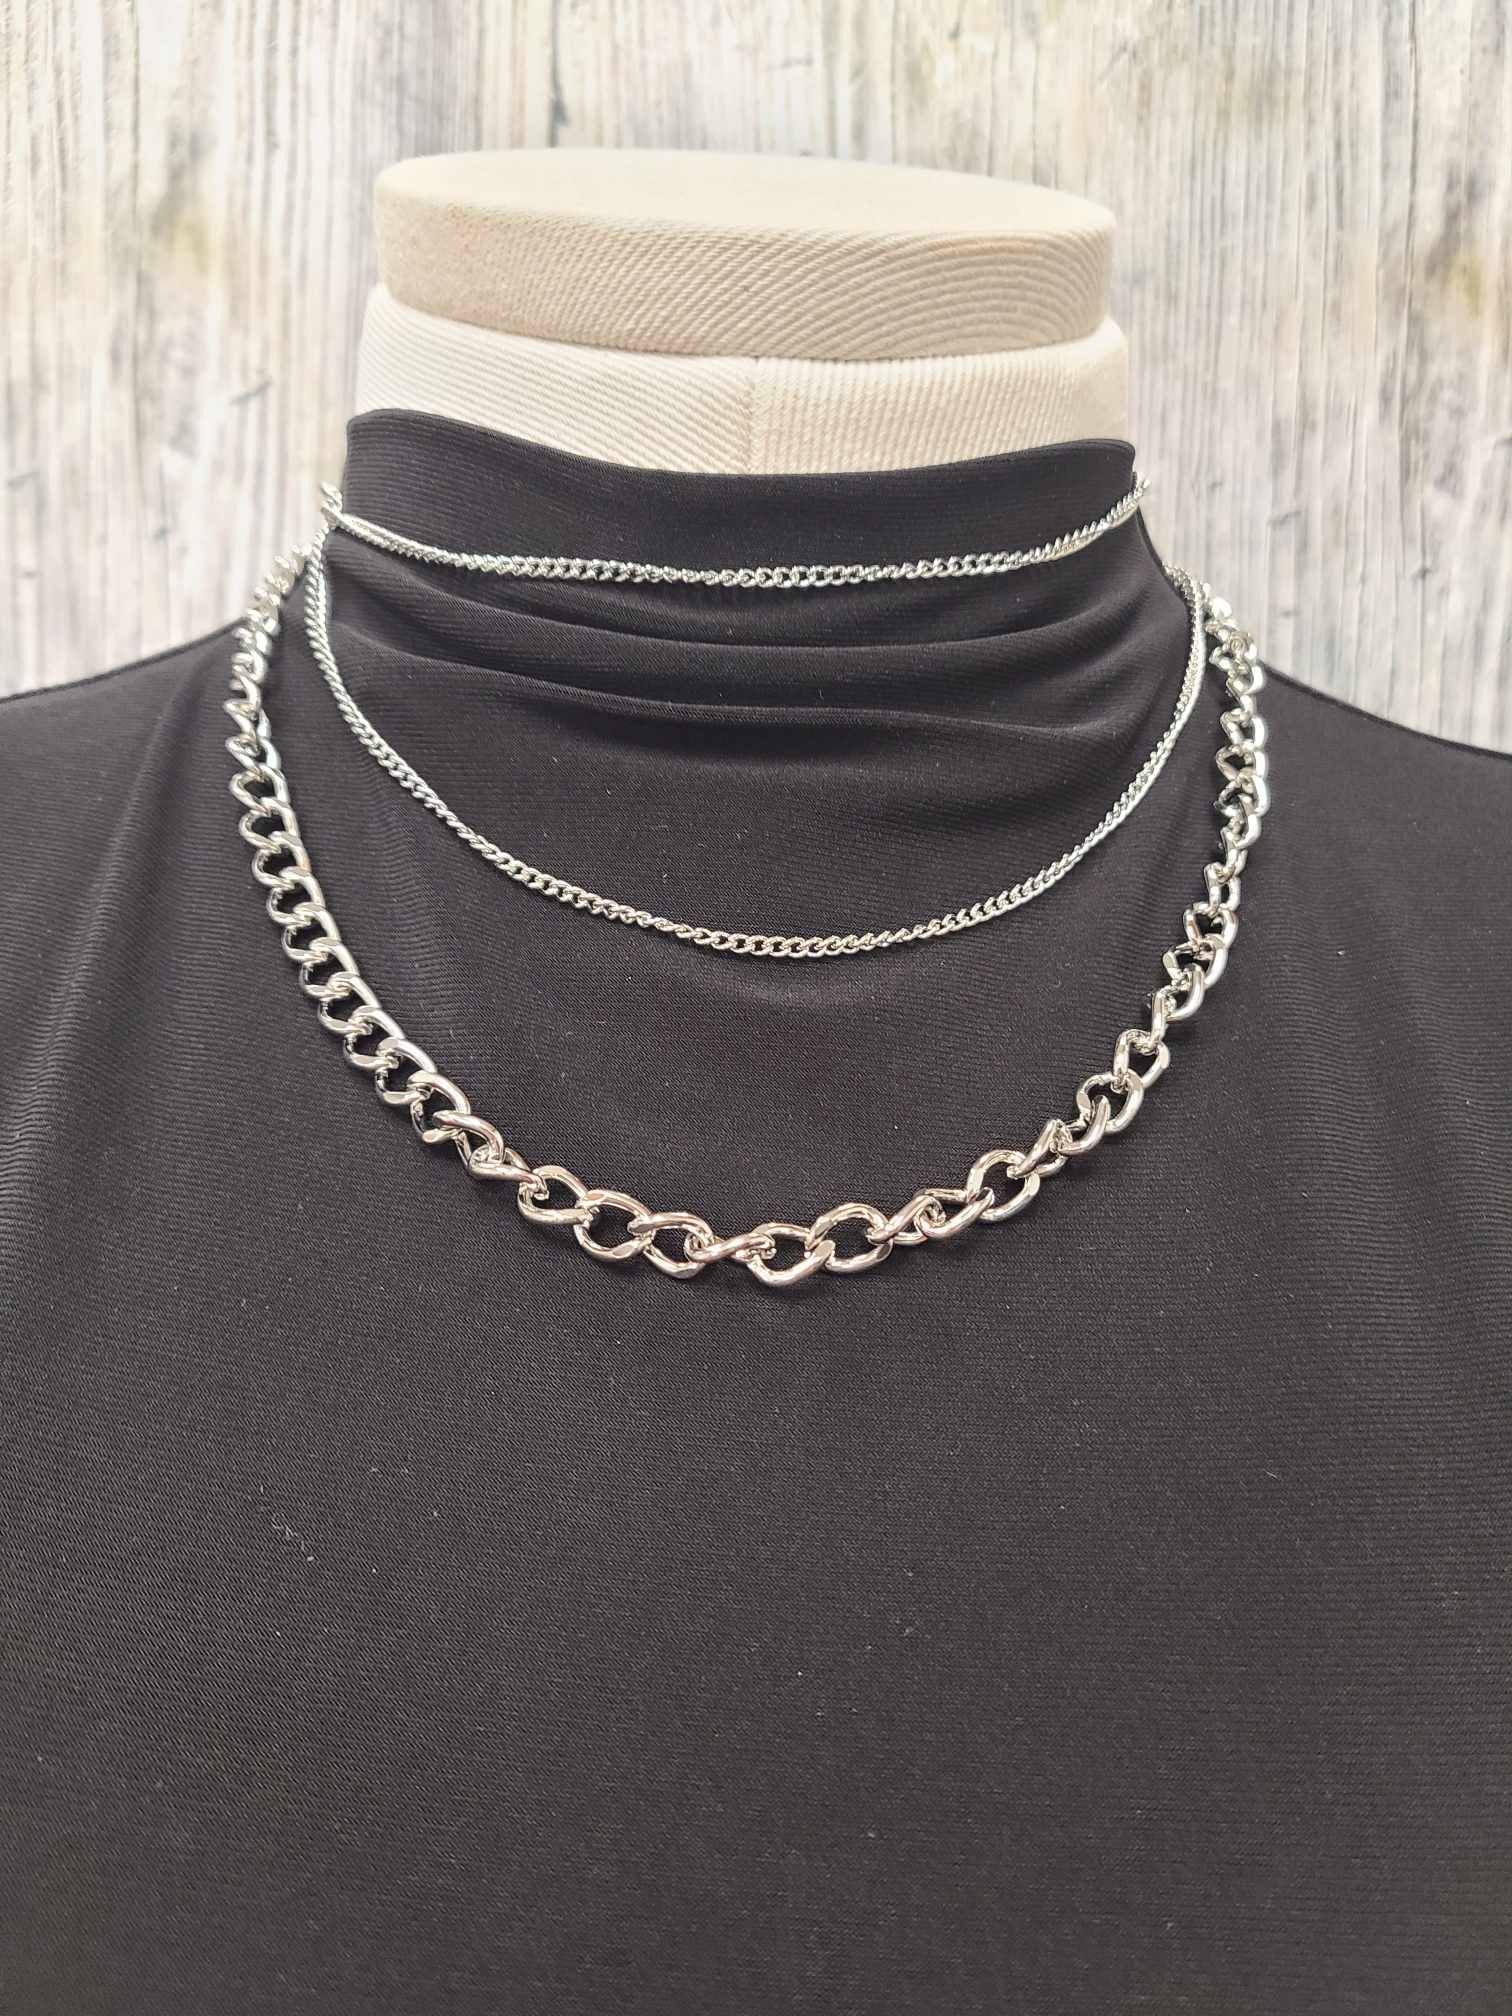 Silver Multi Chain Necklace.